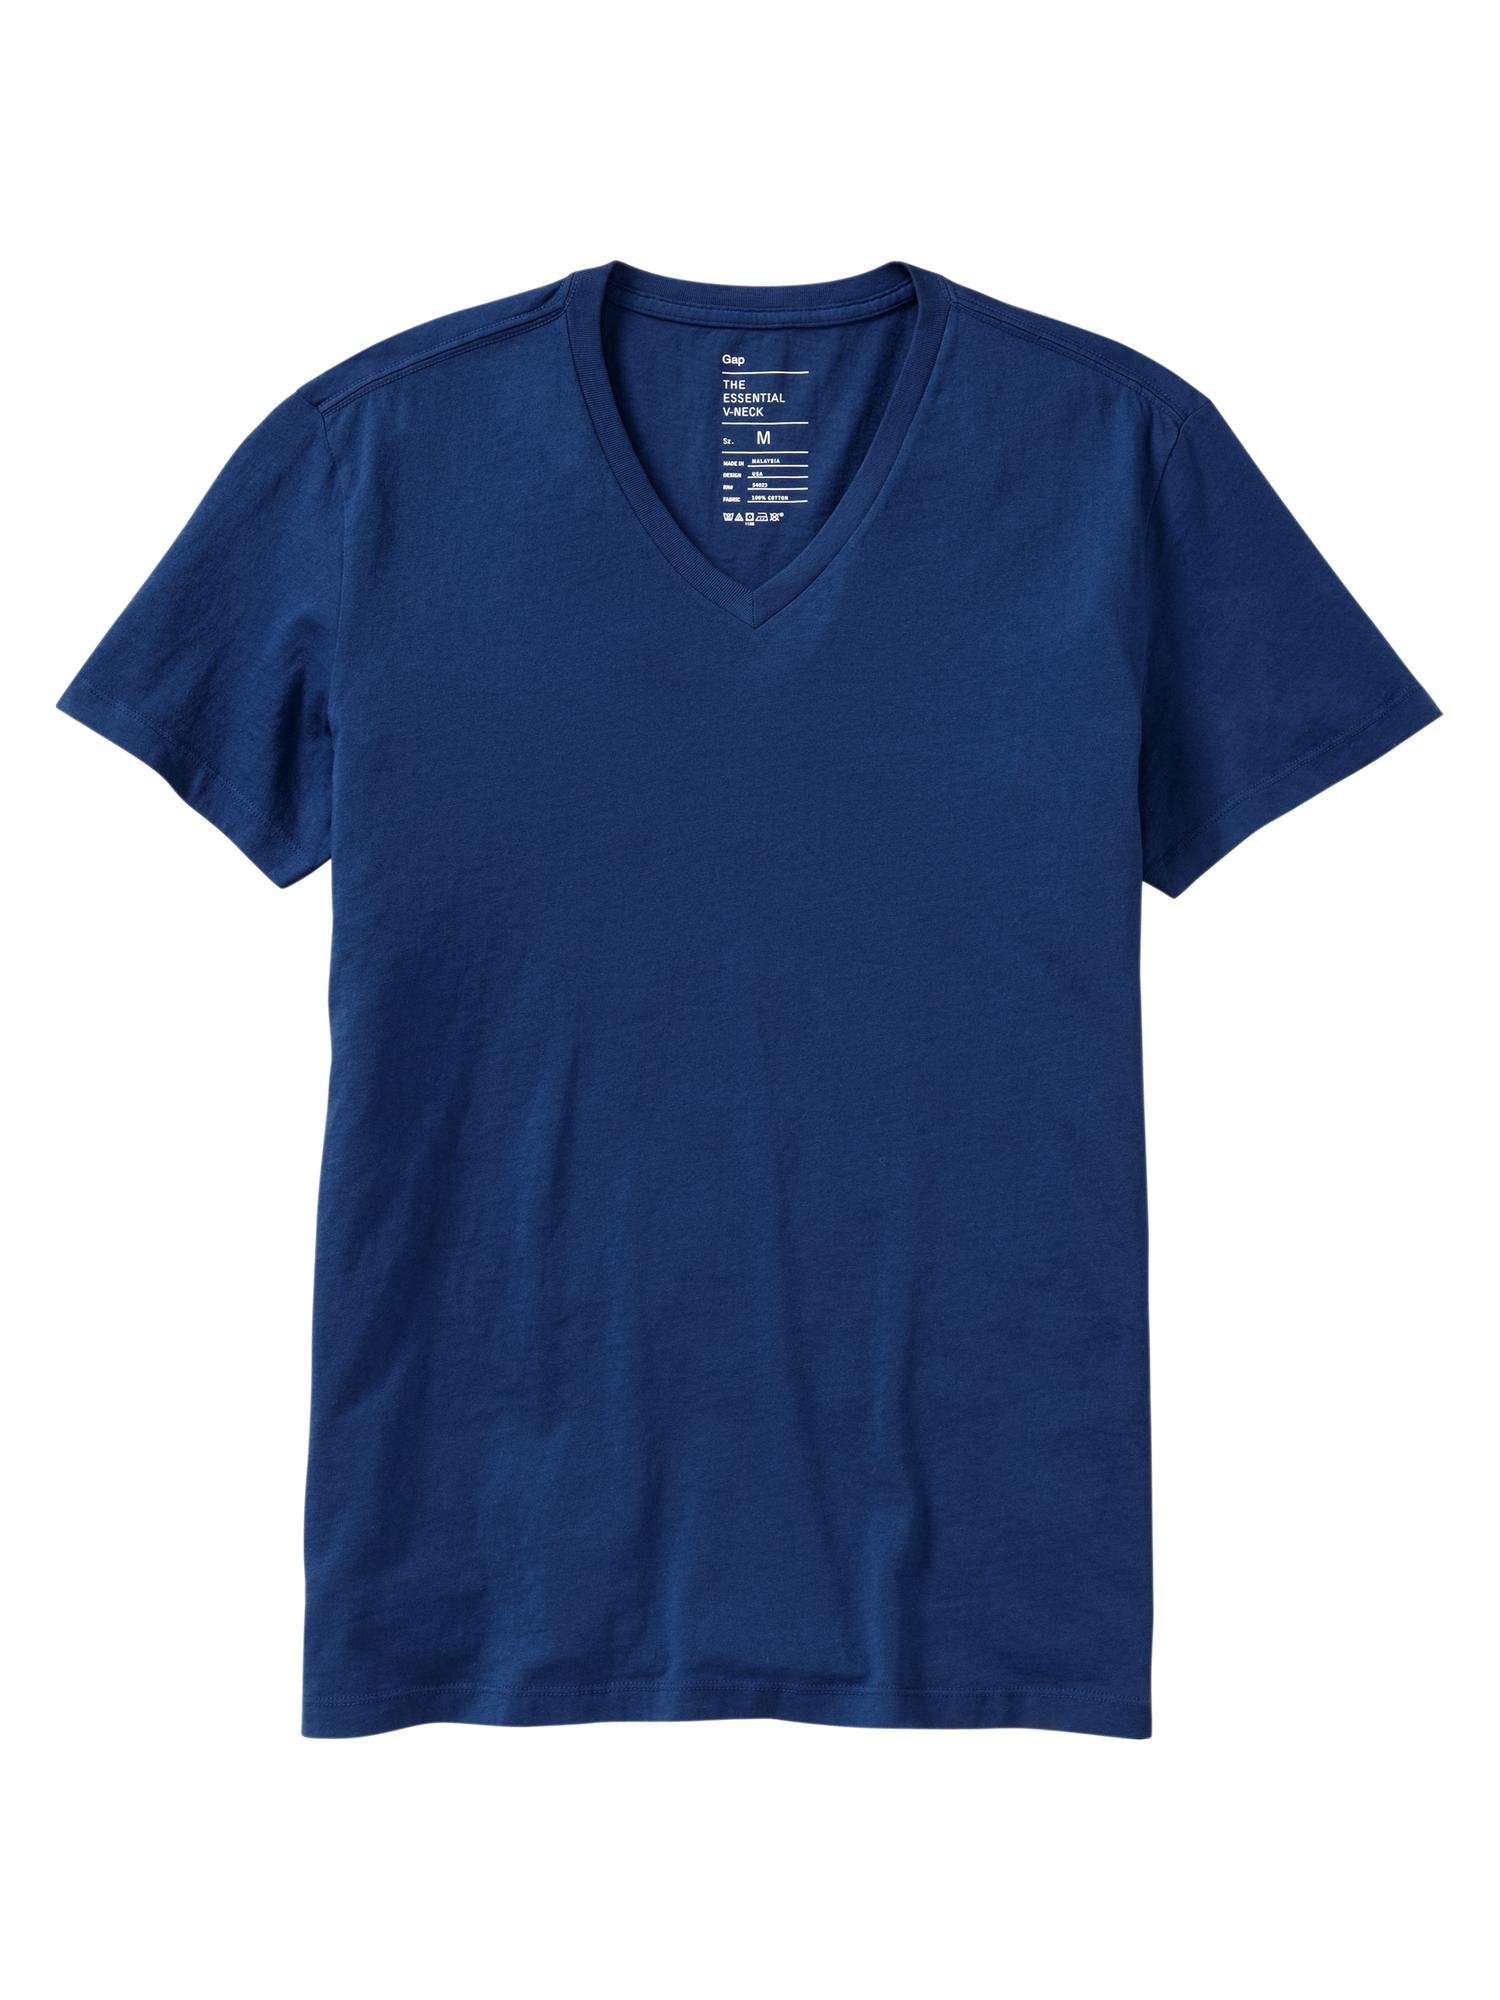 Gap Essential V-neck T-shirt in Blue for Men - Lyst